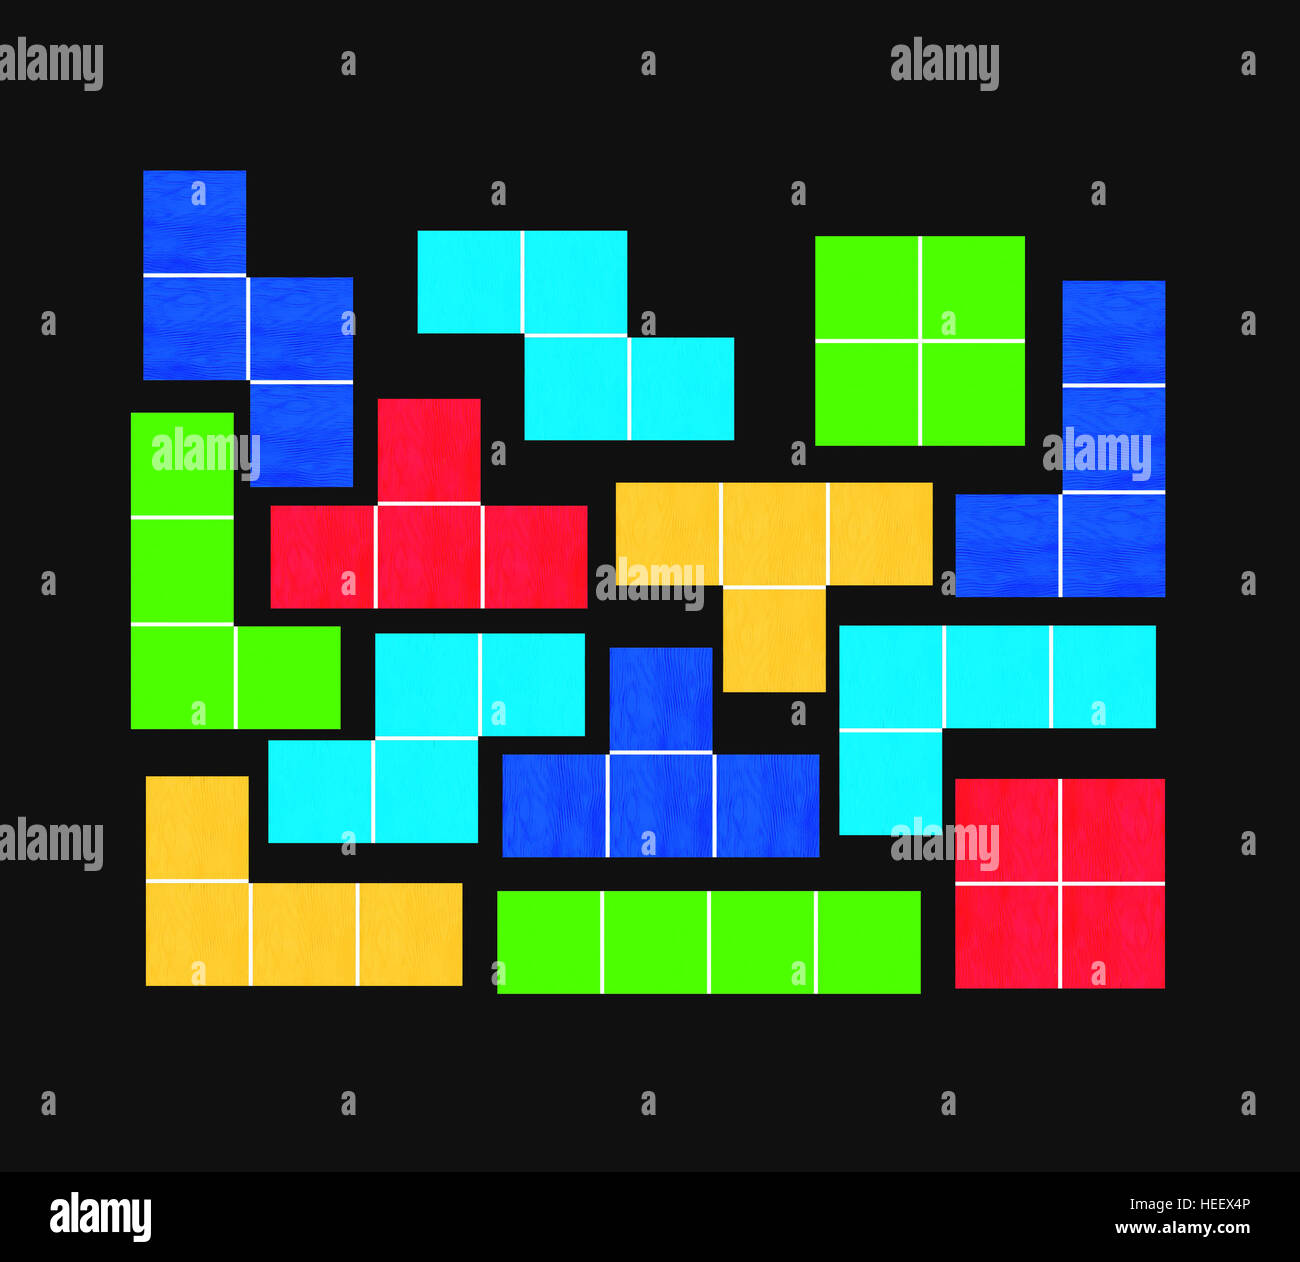 Jeu tetris sur fond noir - jeu de puzzle - Formes géométriques Photo Stock  - Alamy